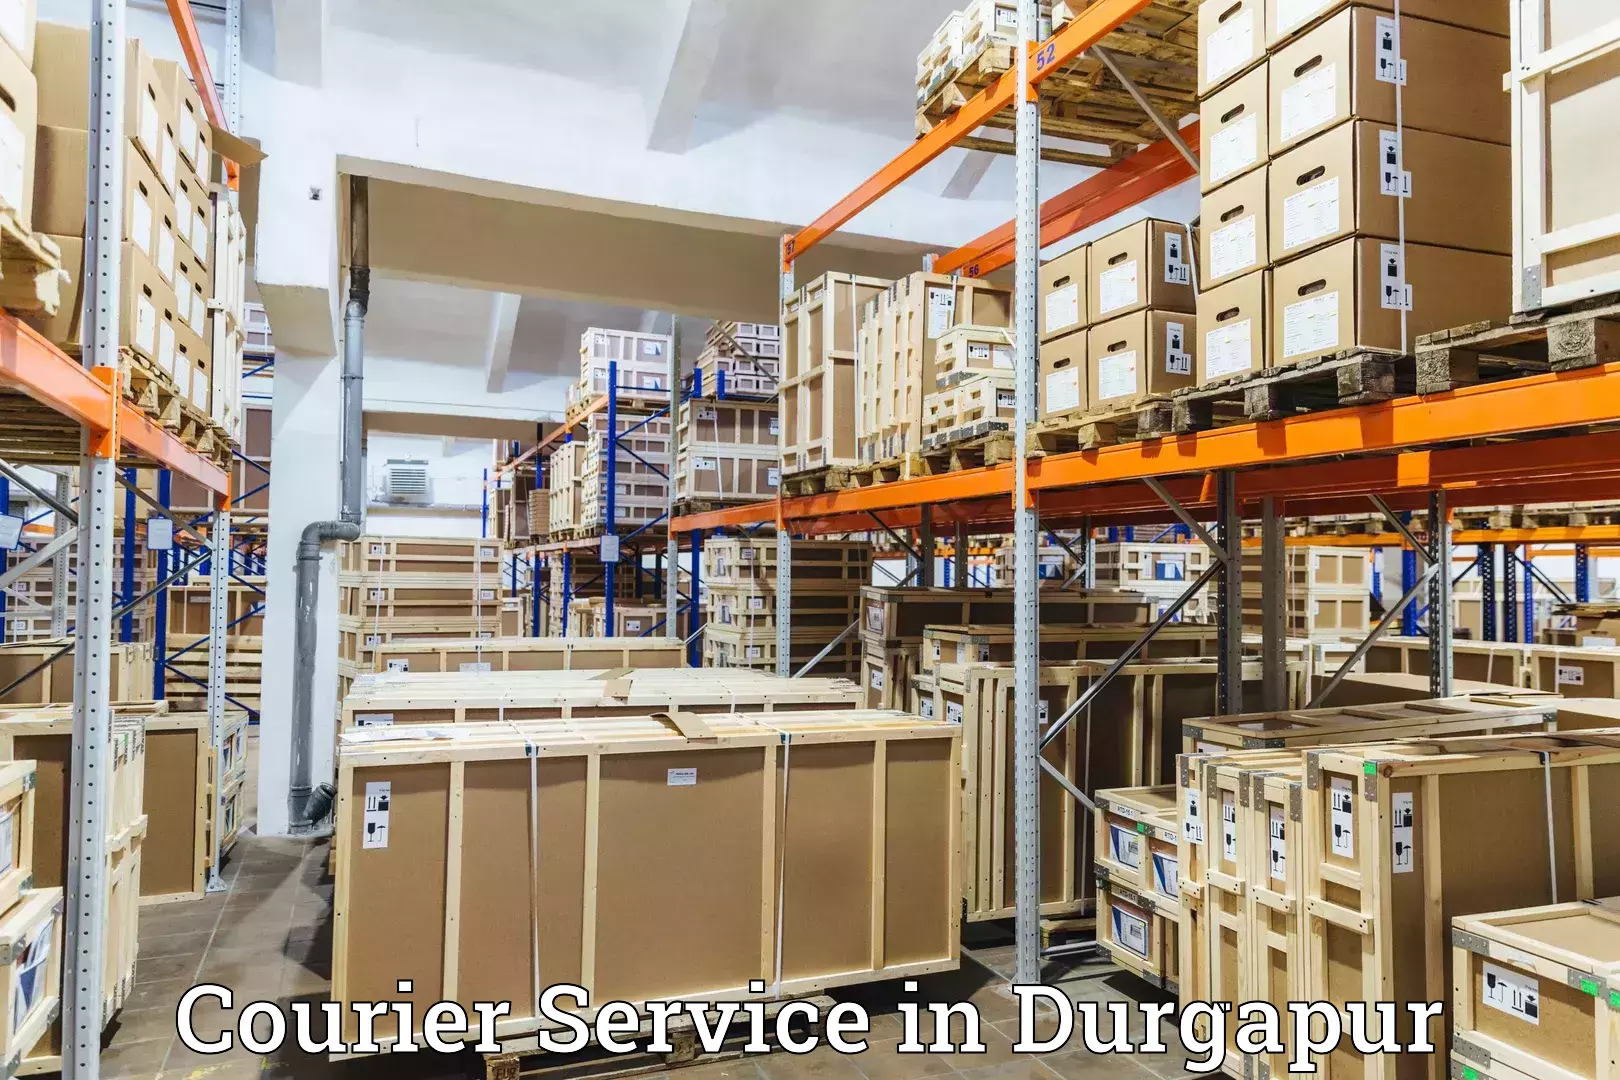 Urgent courier needs in Durgapur